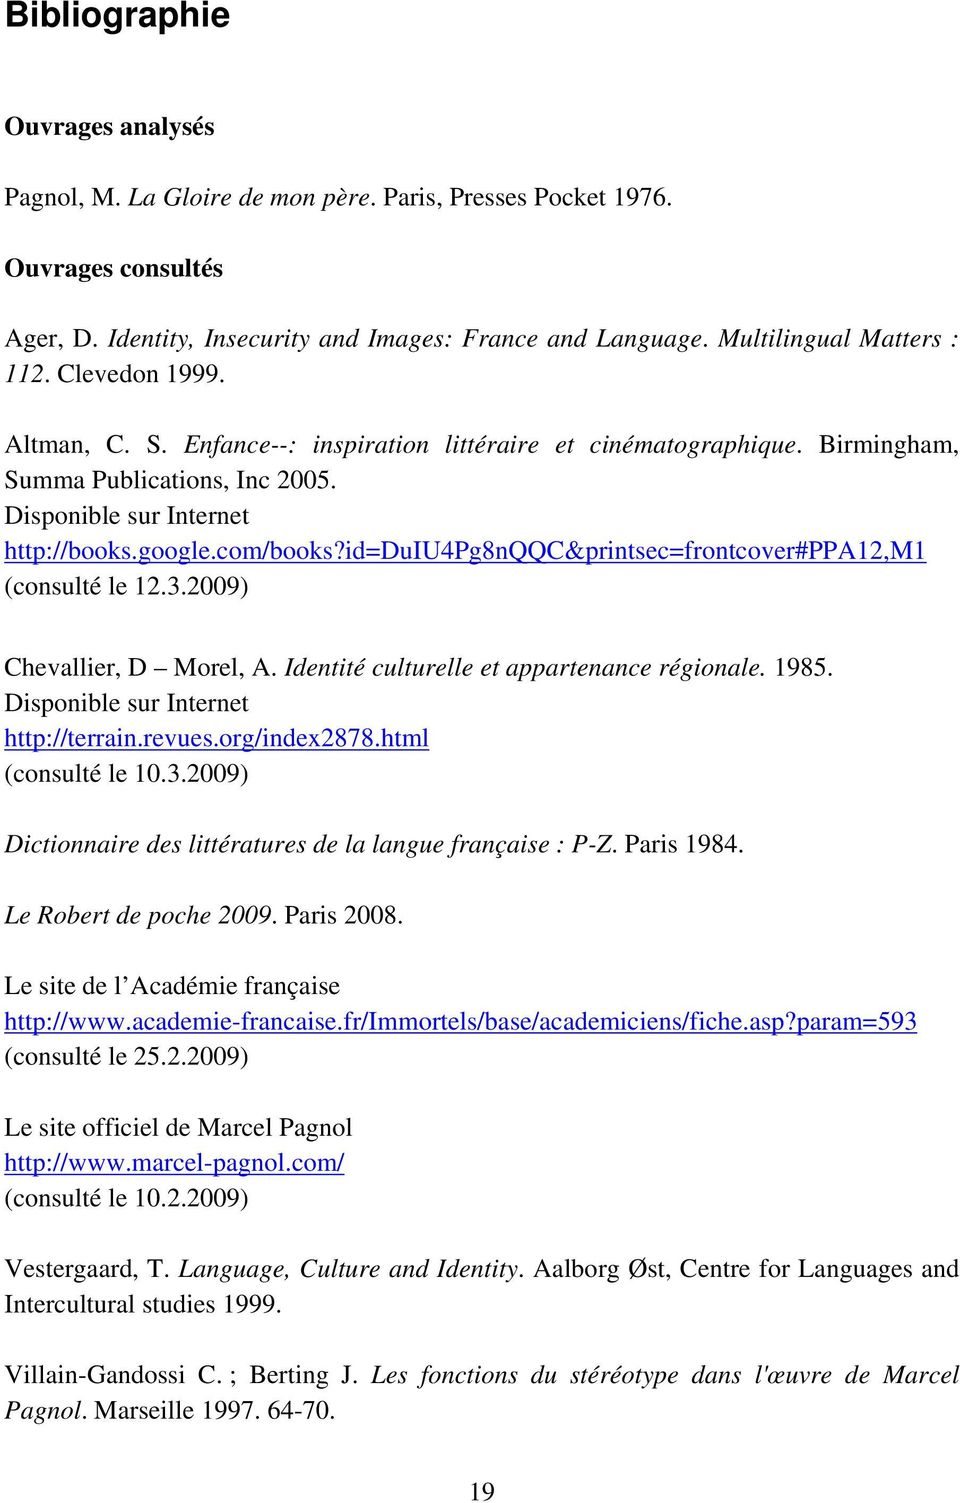 com/books?id=duiu4pg8nqqc&printsec=frontcover#ppa12,m1 (consulté le 12.3.2009) Chevallier, D Morel, A. Identité culturelle et appartenance régionale. 1985. Disponible sur Internet http://terrain.